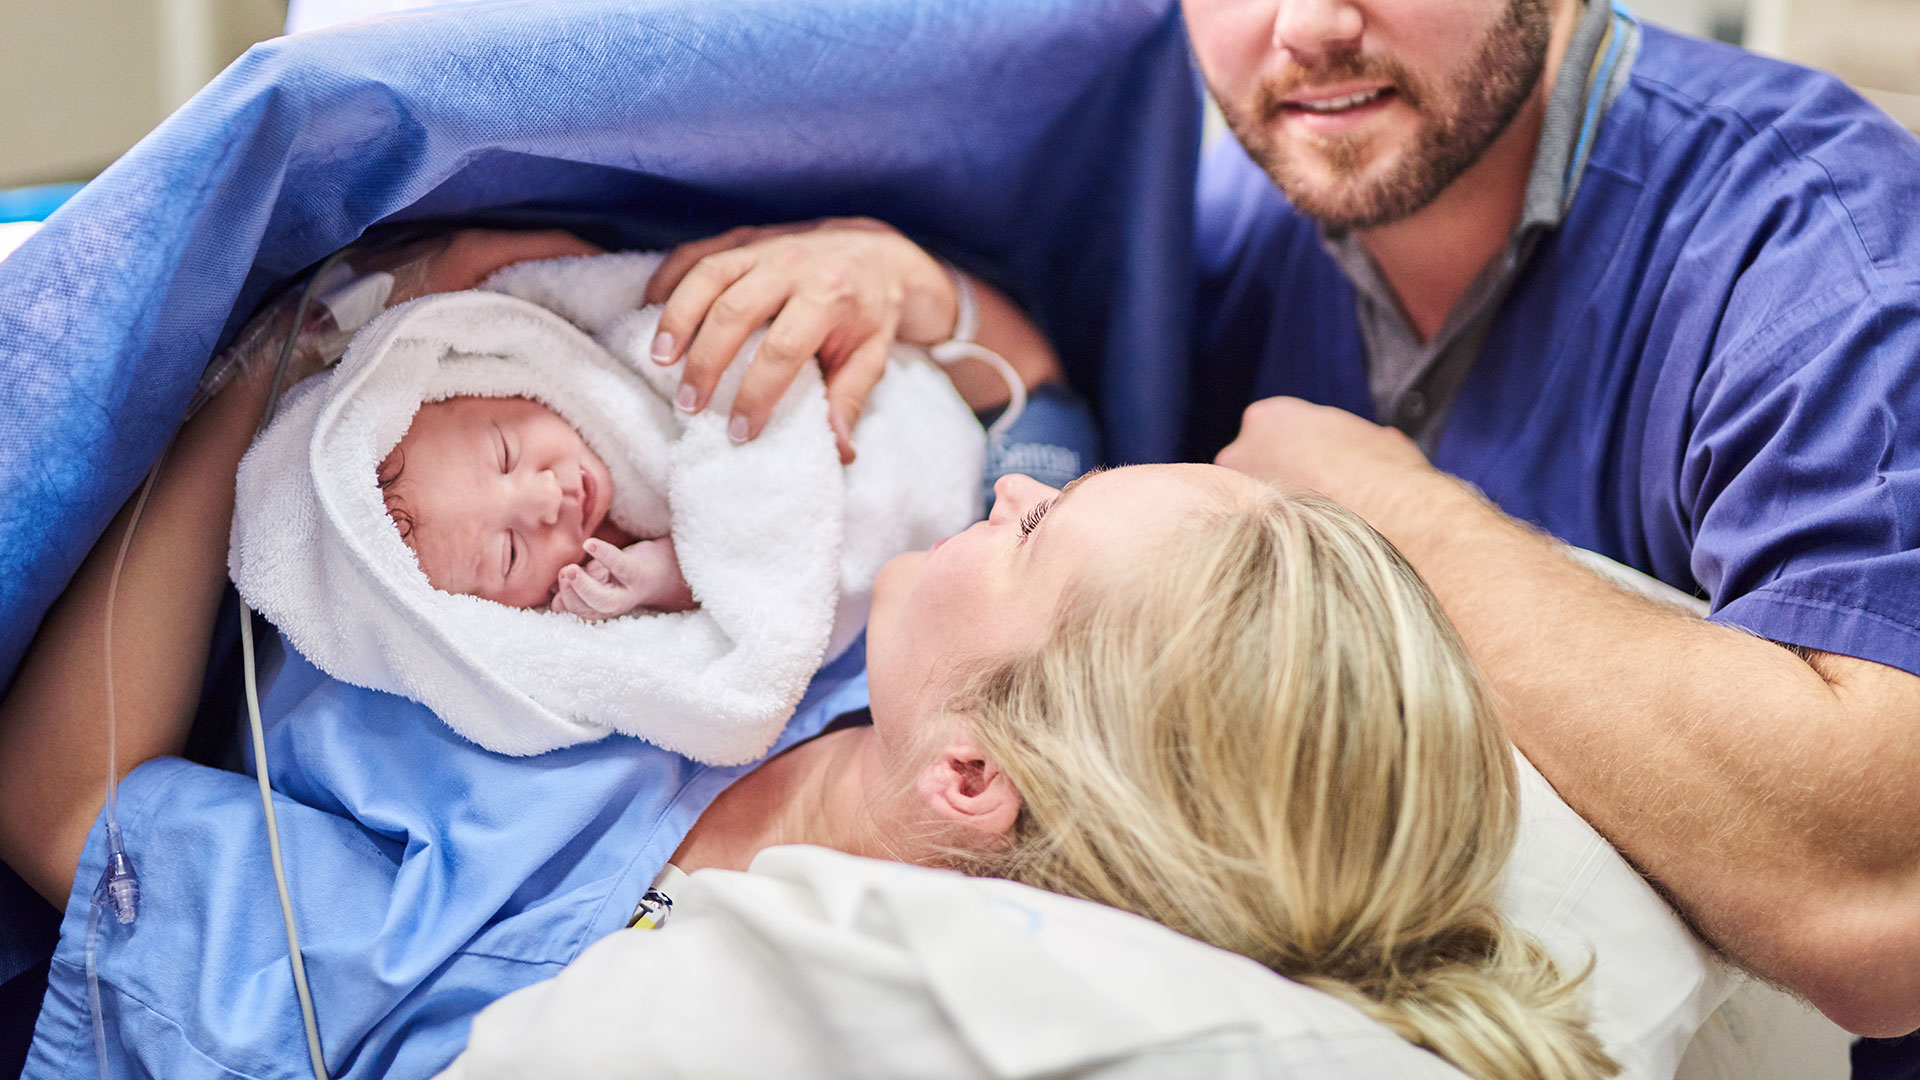 mulher deitada na cama em uma sala de cirurgia segura um bebê no colo. Ao lado dela, está um homem